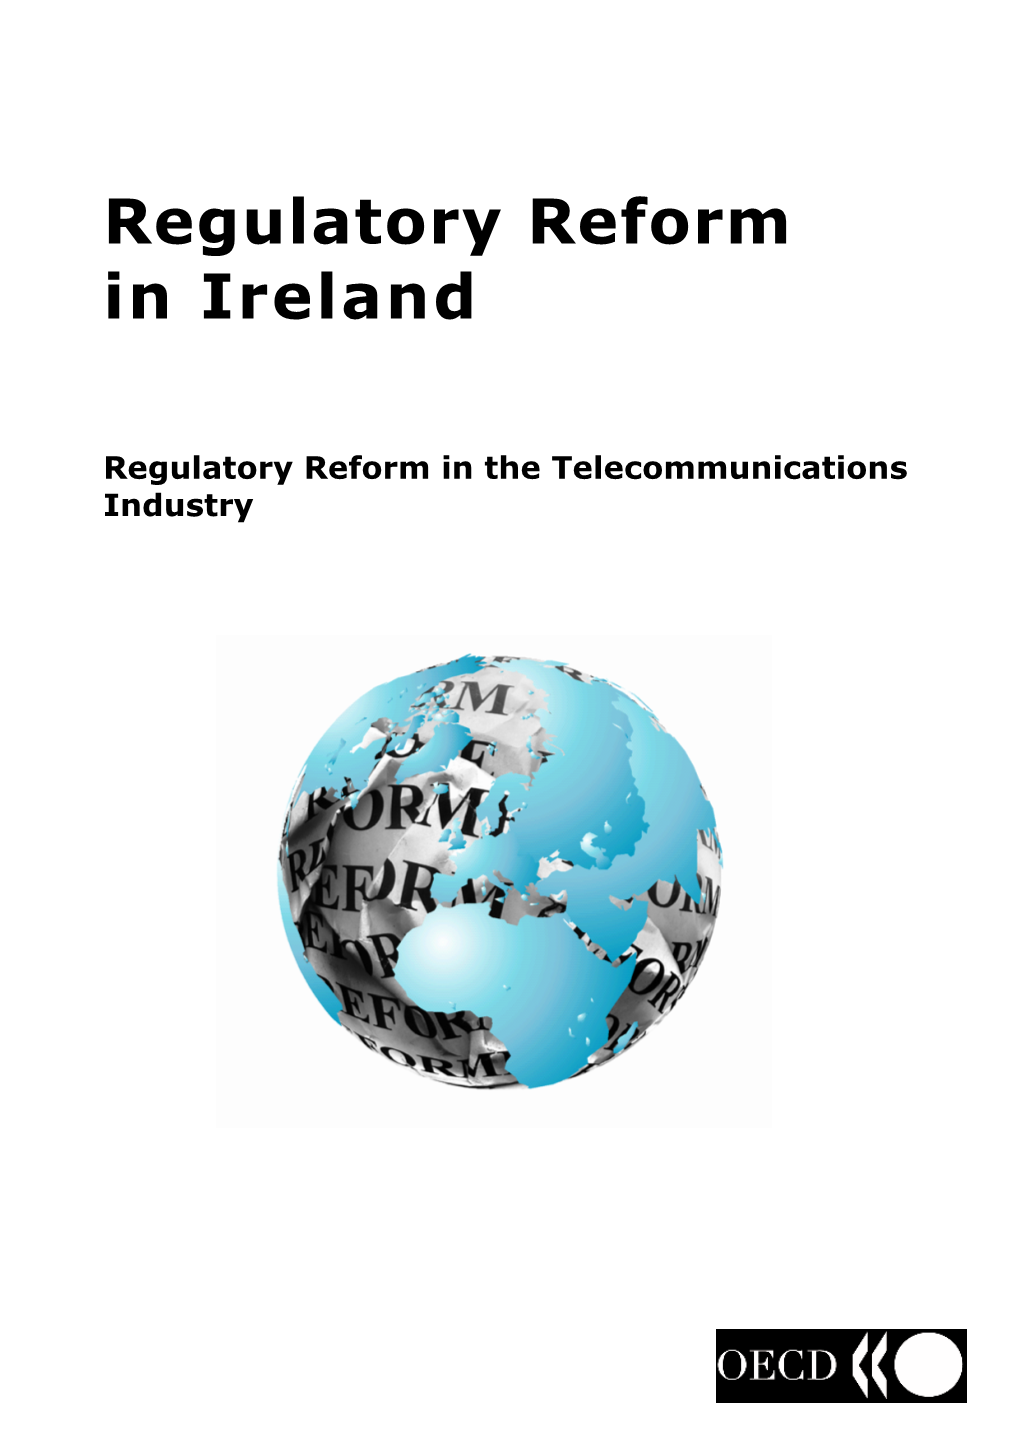 Regulator\ Reform in Ireland